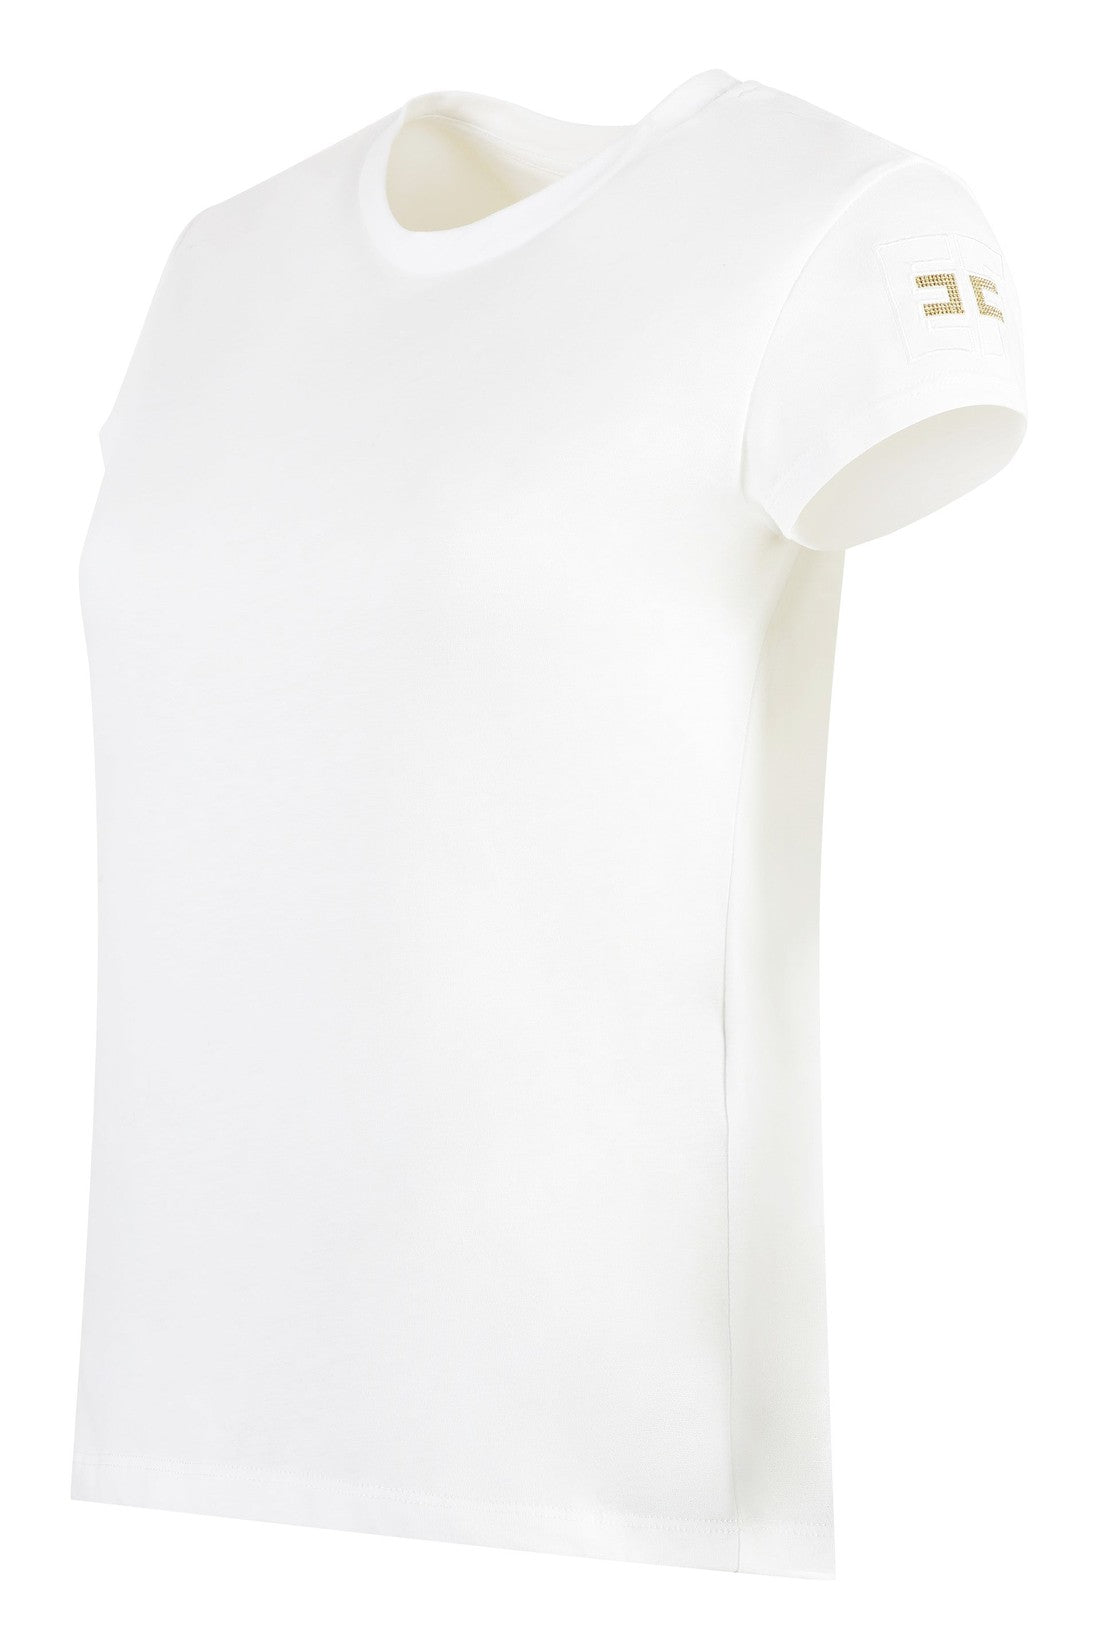 Elisabetta Franchi-OUTLET-SALE-Cotton crew-neck T-shirt-ARCHIVIST